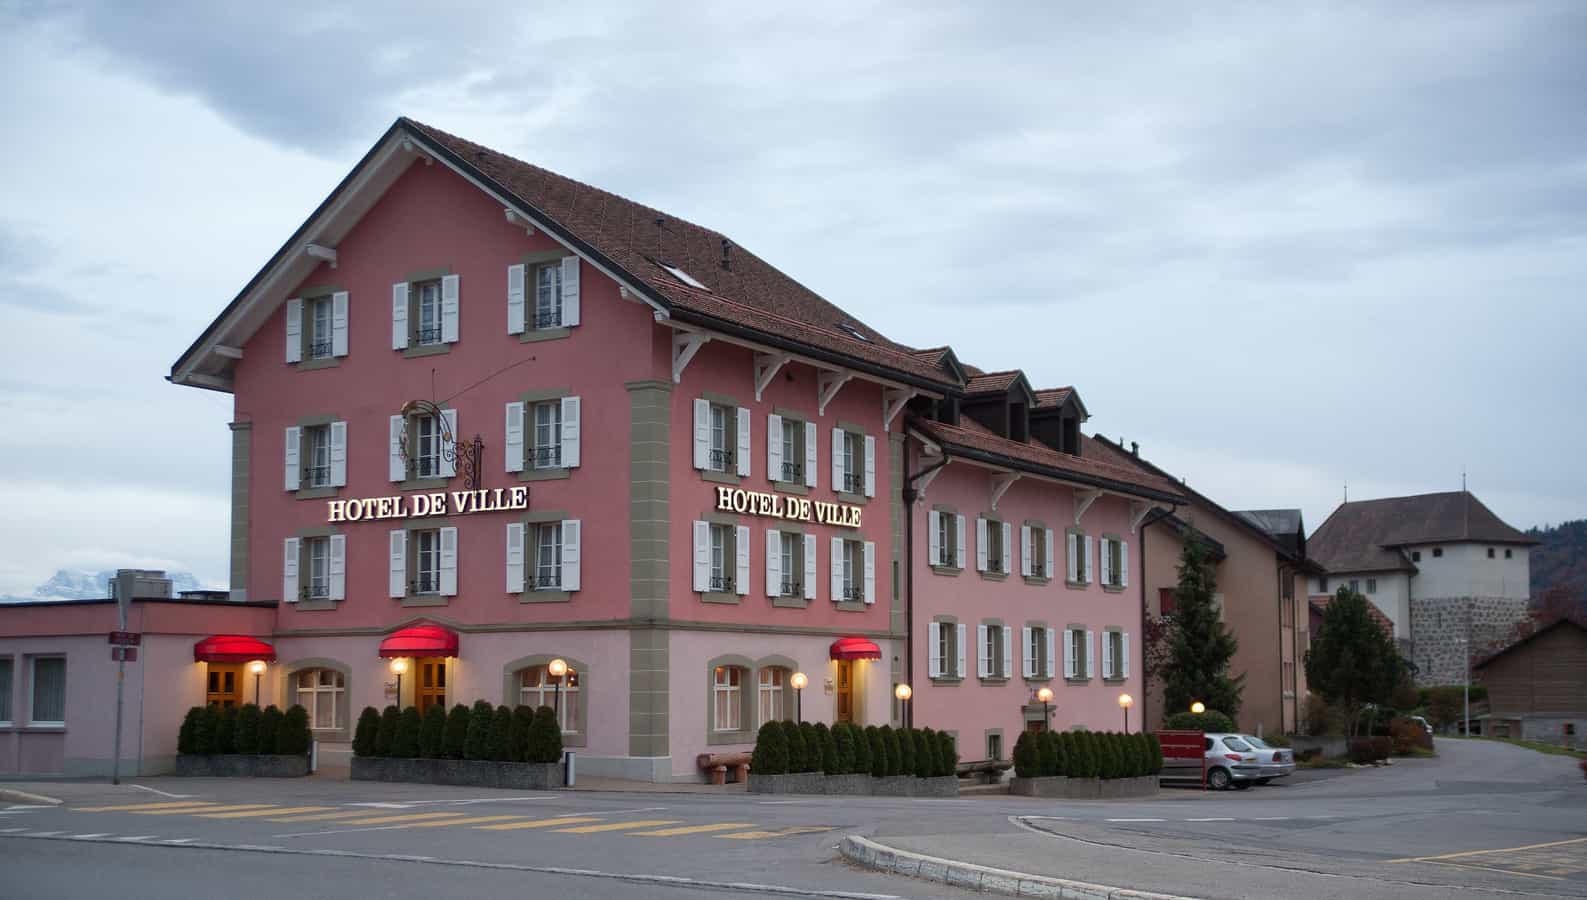 Hôtel de ville d'Attalens, canton de Fribourg, Suisse.